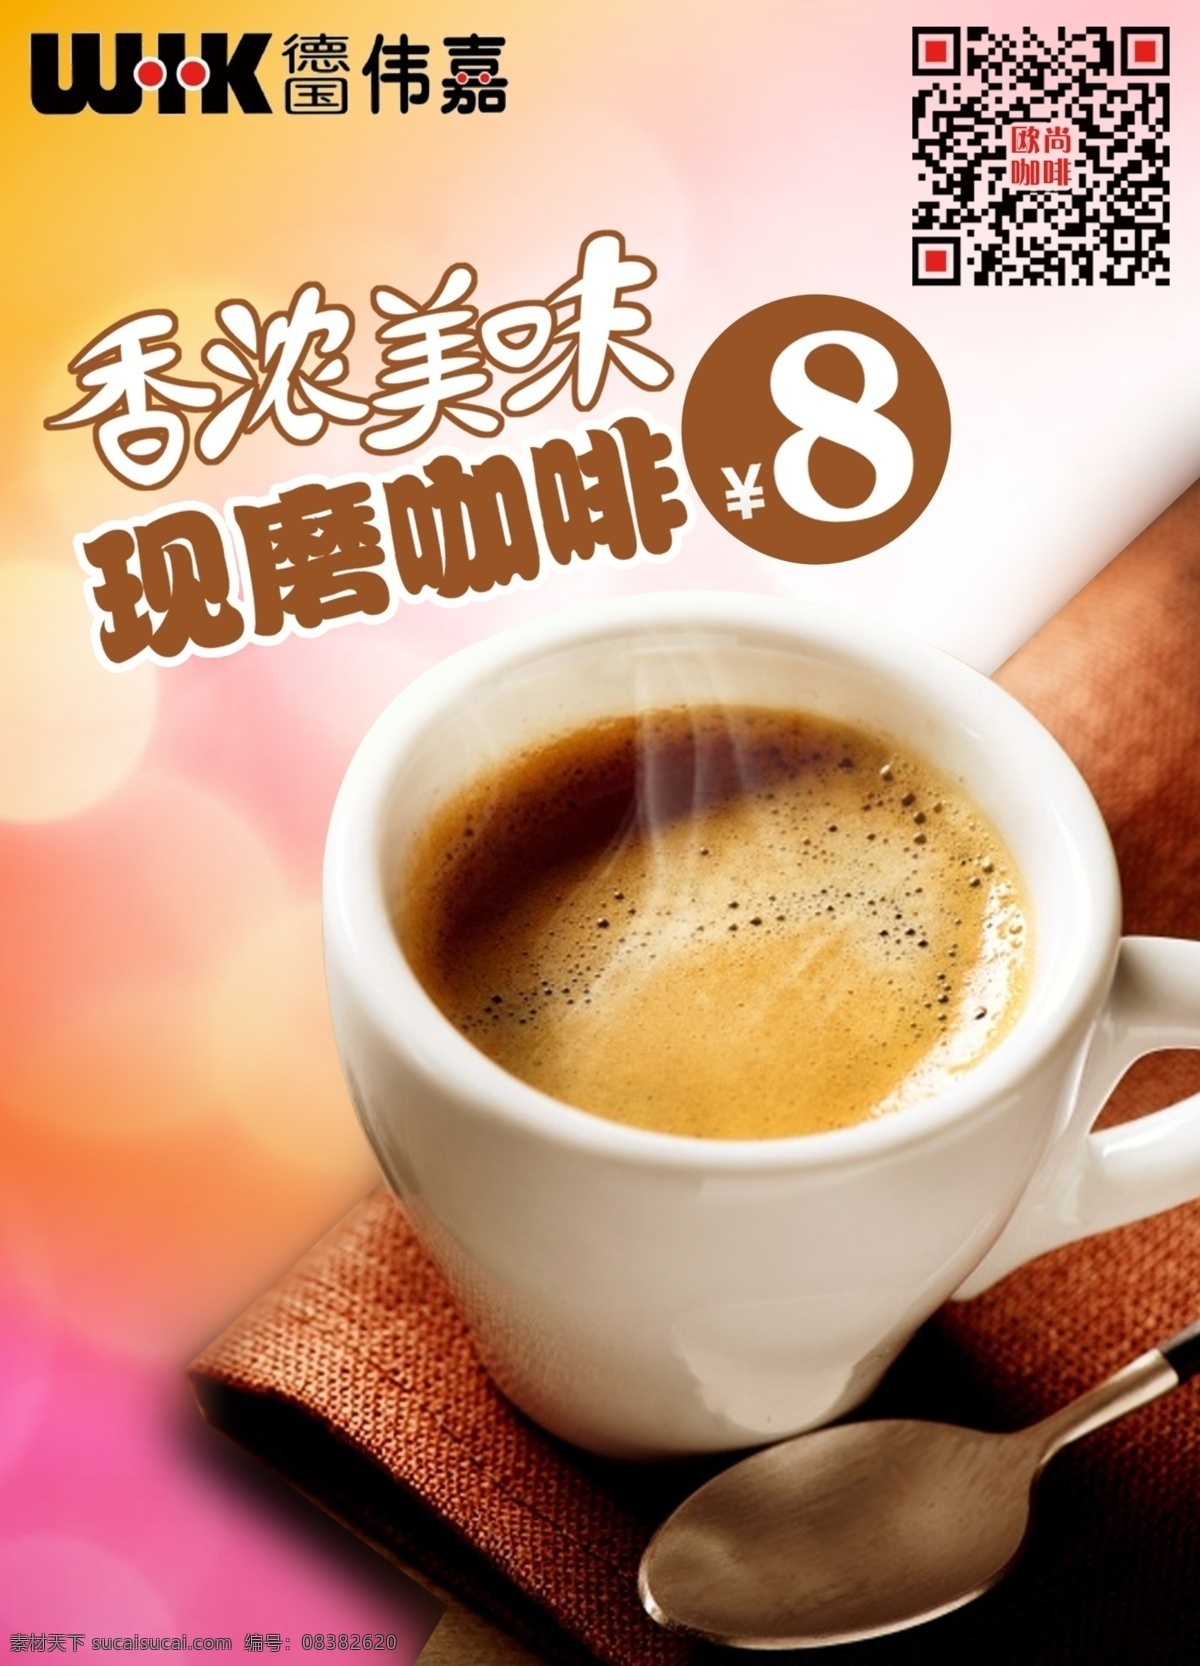 便利店 咖啡 宣传 桌 卡 咖啡宣传卡牌 咖啡促销卡牌 咖啡海报 咖啡设计 咖啡促销